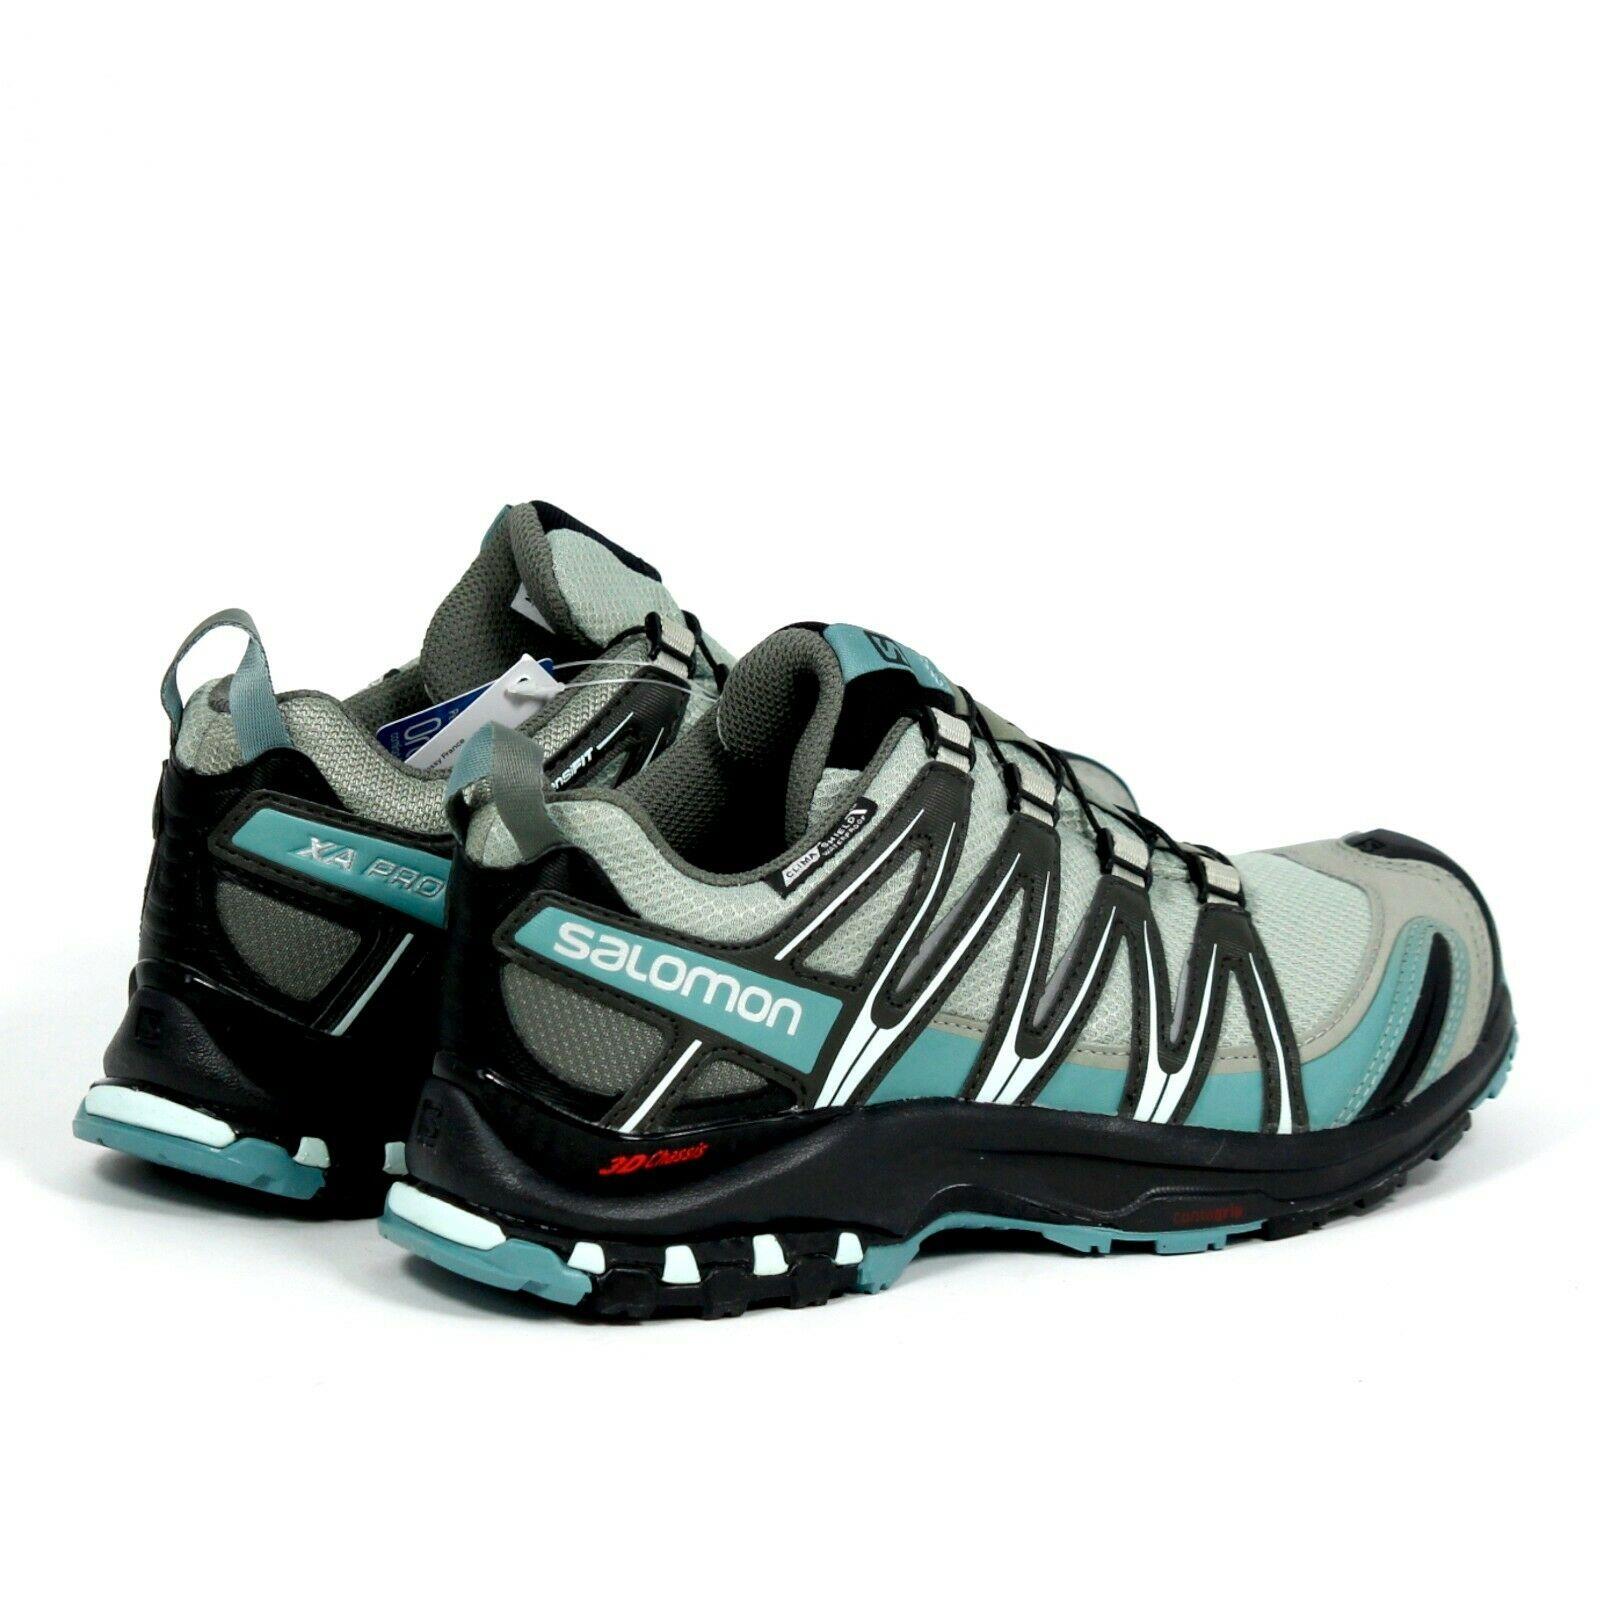 Salomon shoes Pro Trail - Multicolor 0